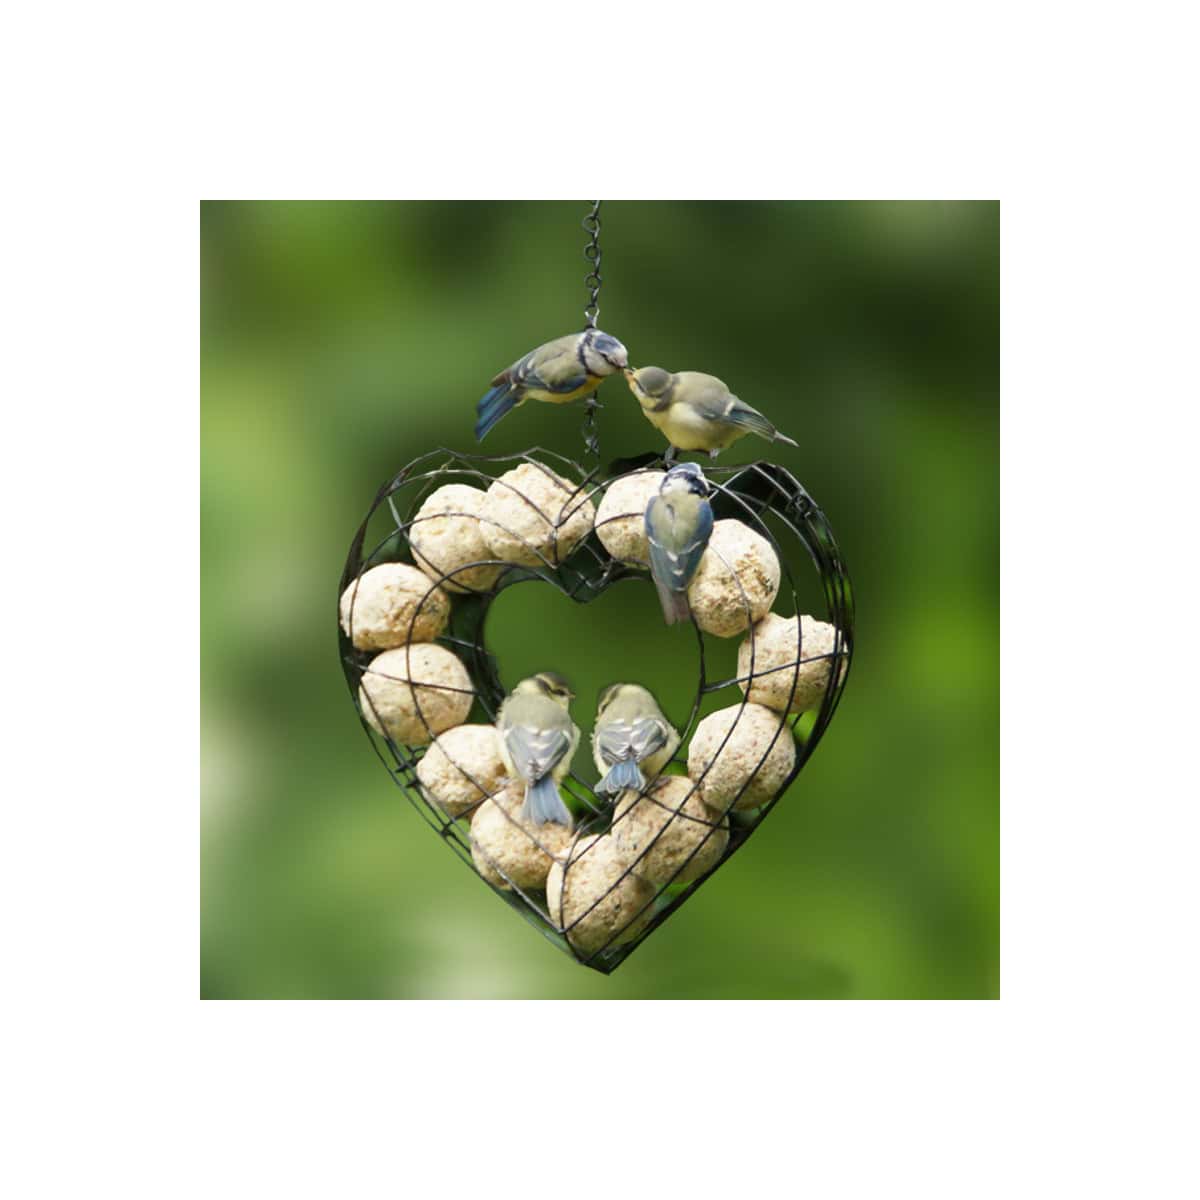 Un support boule de graisse en forme de coeur pour nourrir les oiseaux ! 